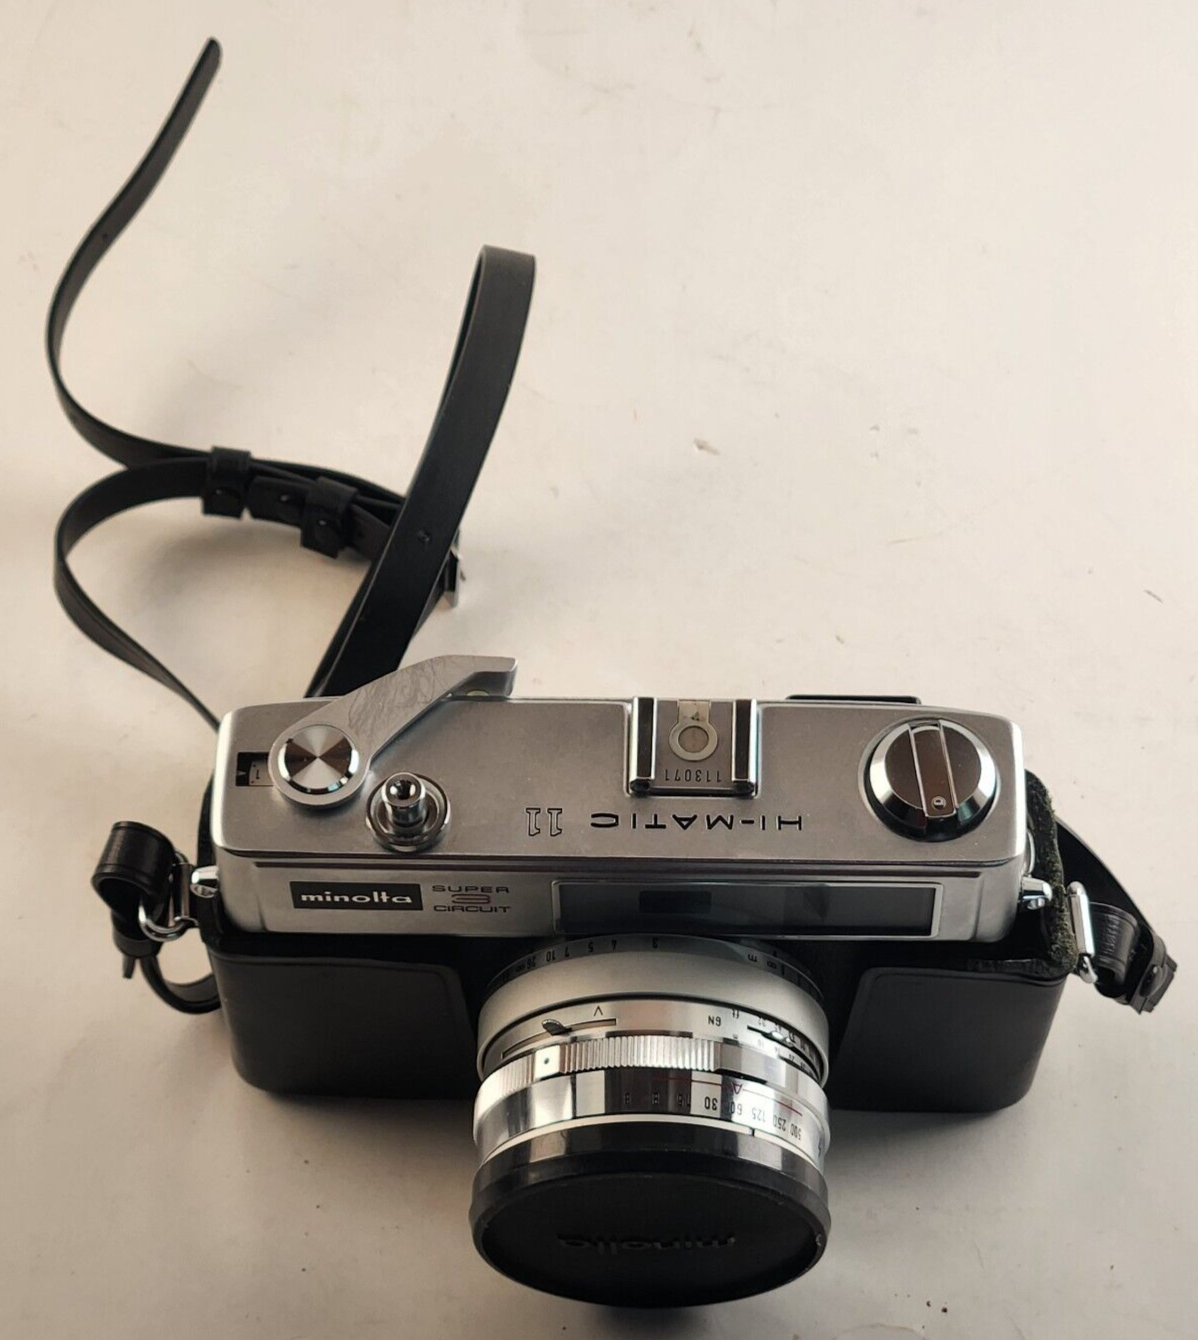 Minolta Hi-matic 11 35MM Camera F1.7 Rokkor Lens Vintage With Original Box